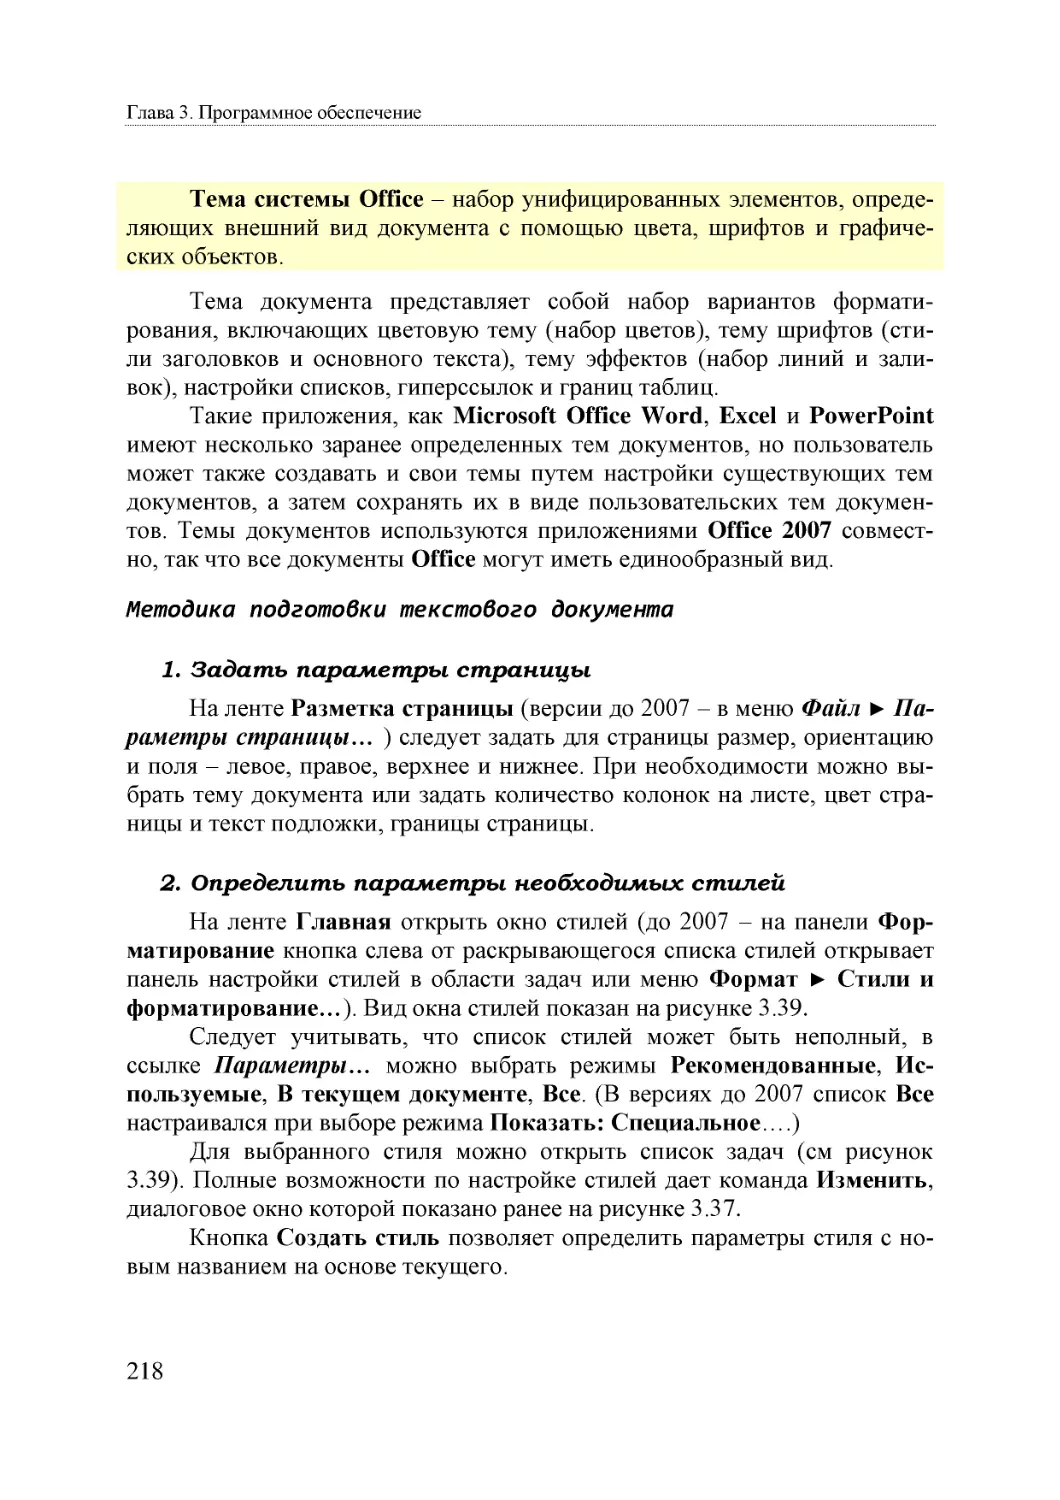 Informatika_Uchebnik_dlya_vuzov_2010 218